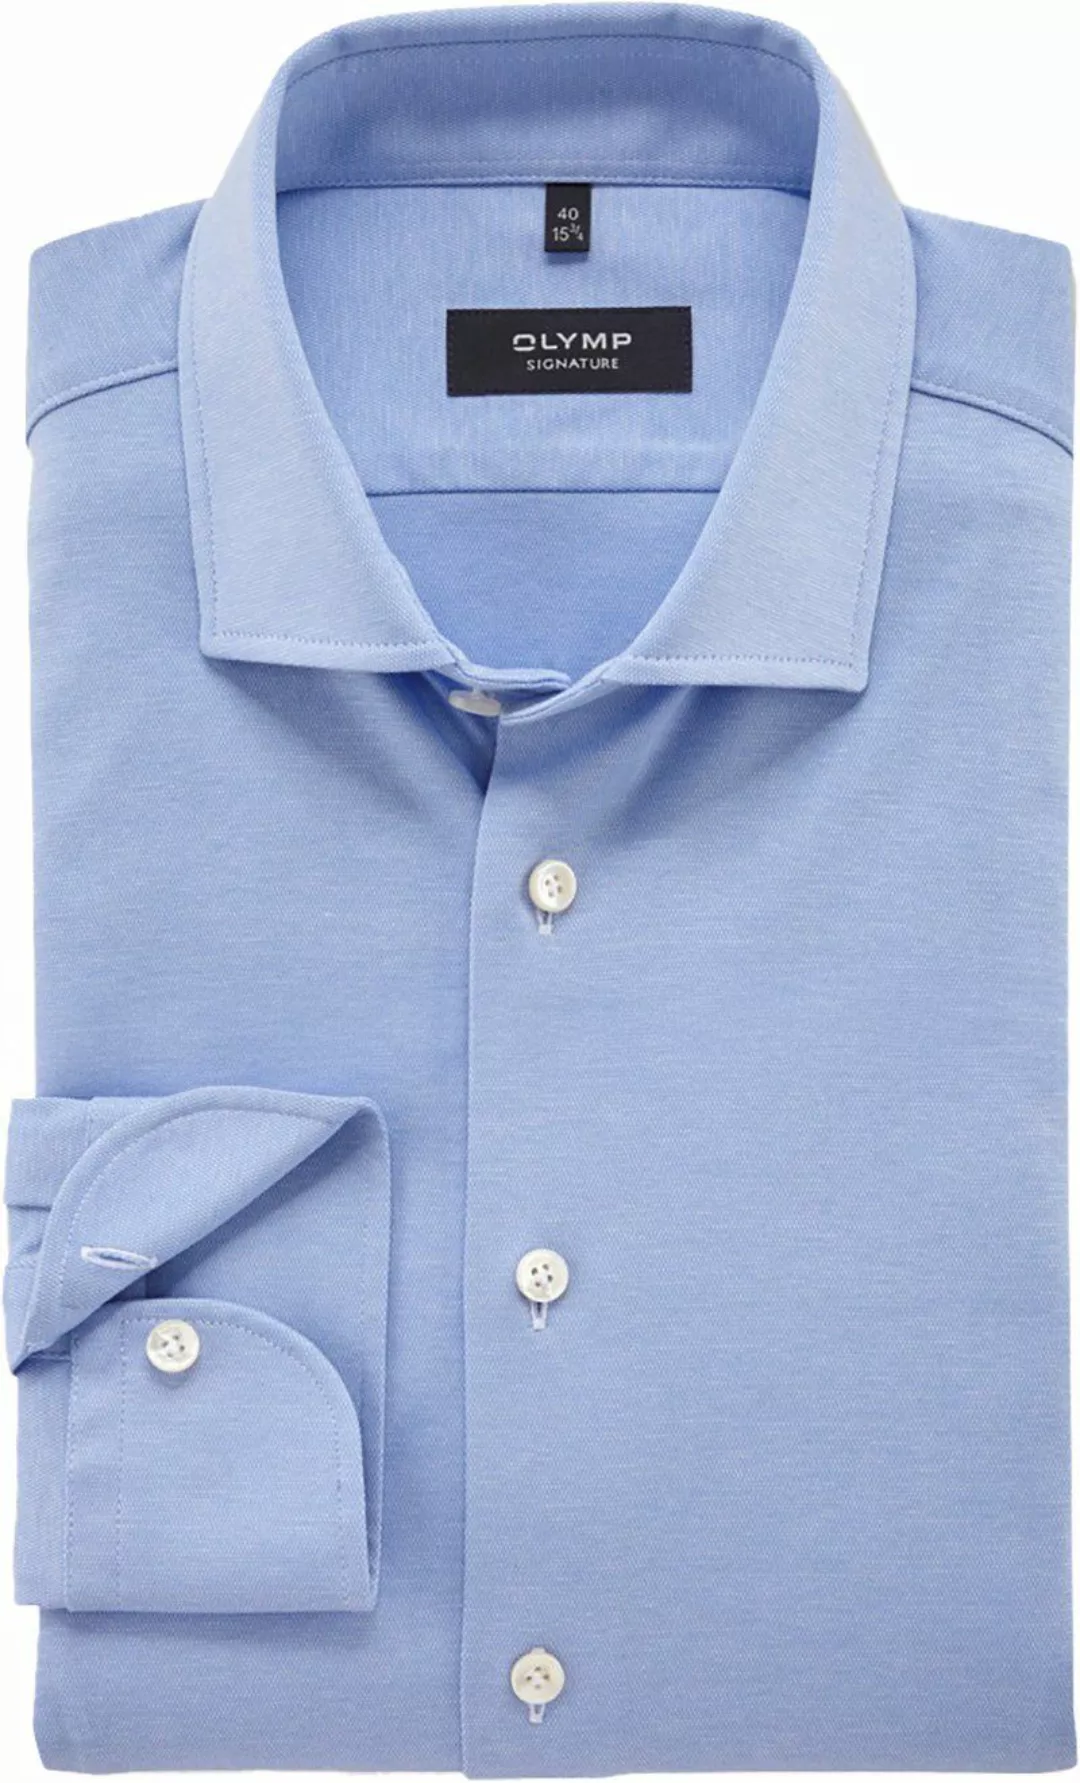 OLYMP Signature Hemd Jersey Hellblau - Größe 40 günstig online kaufen